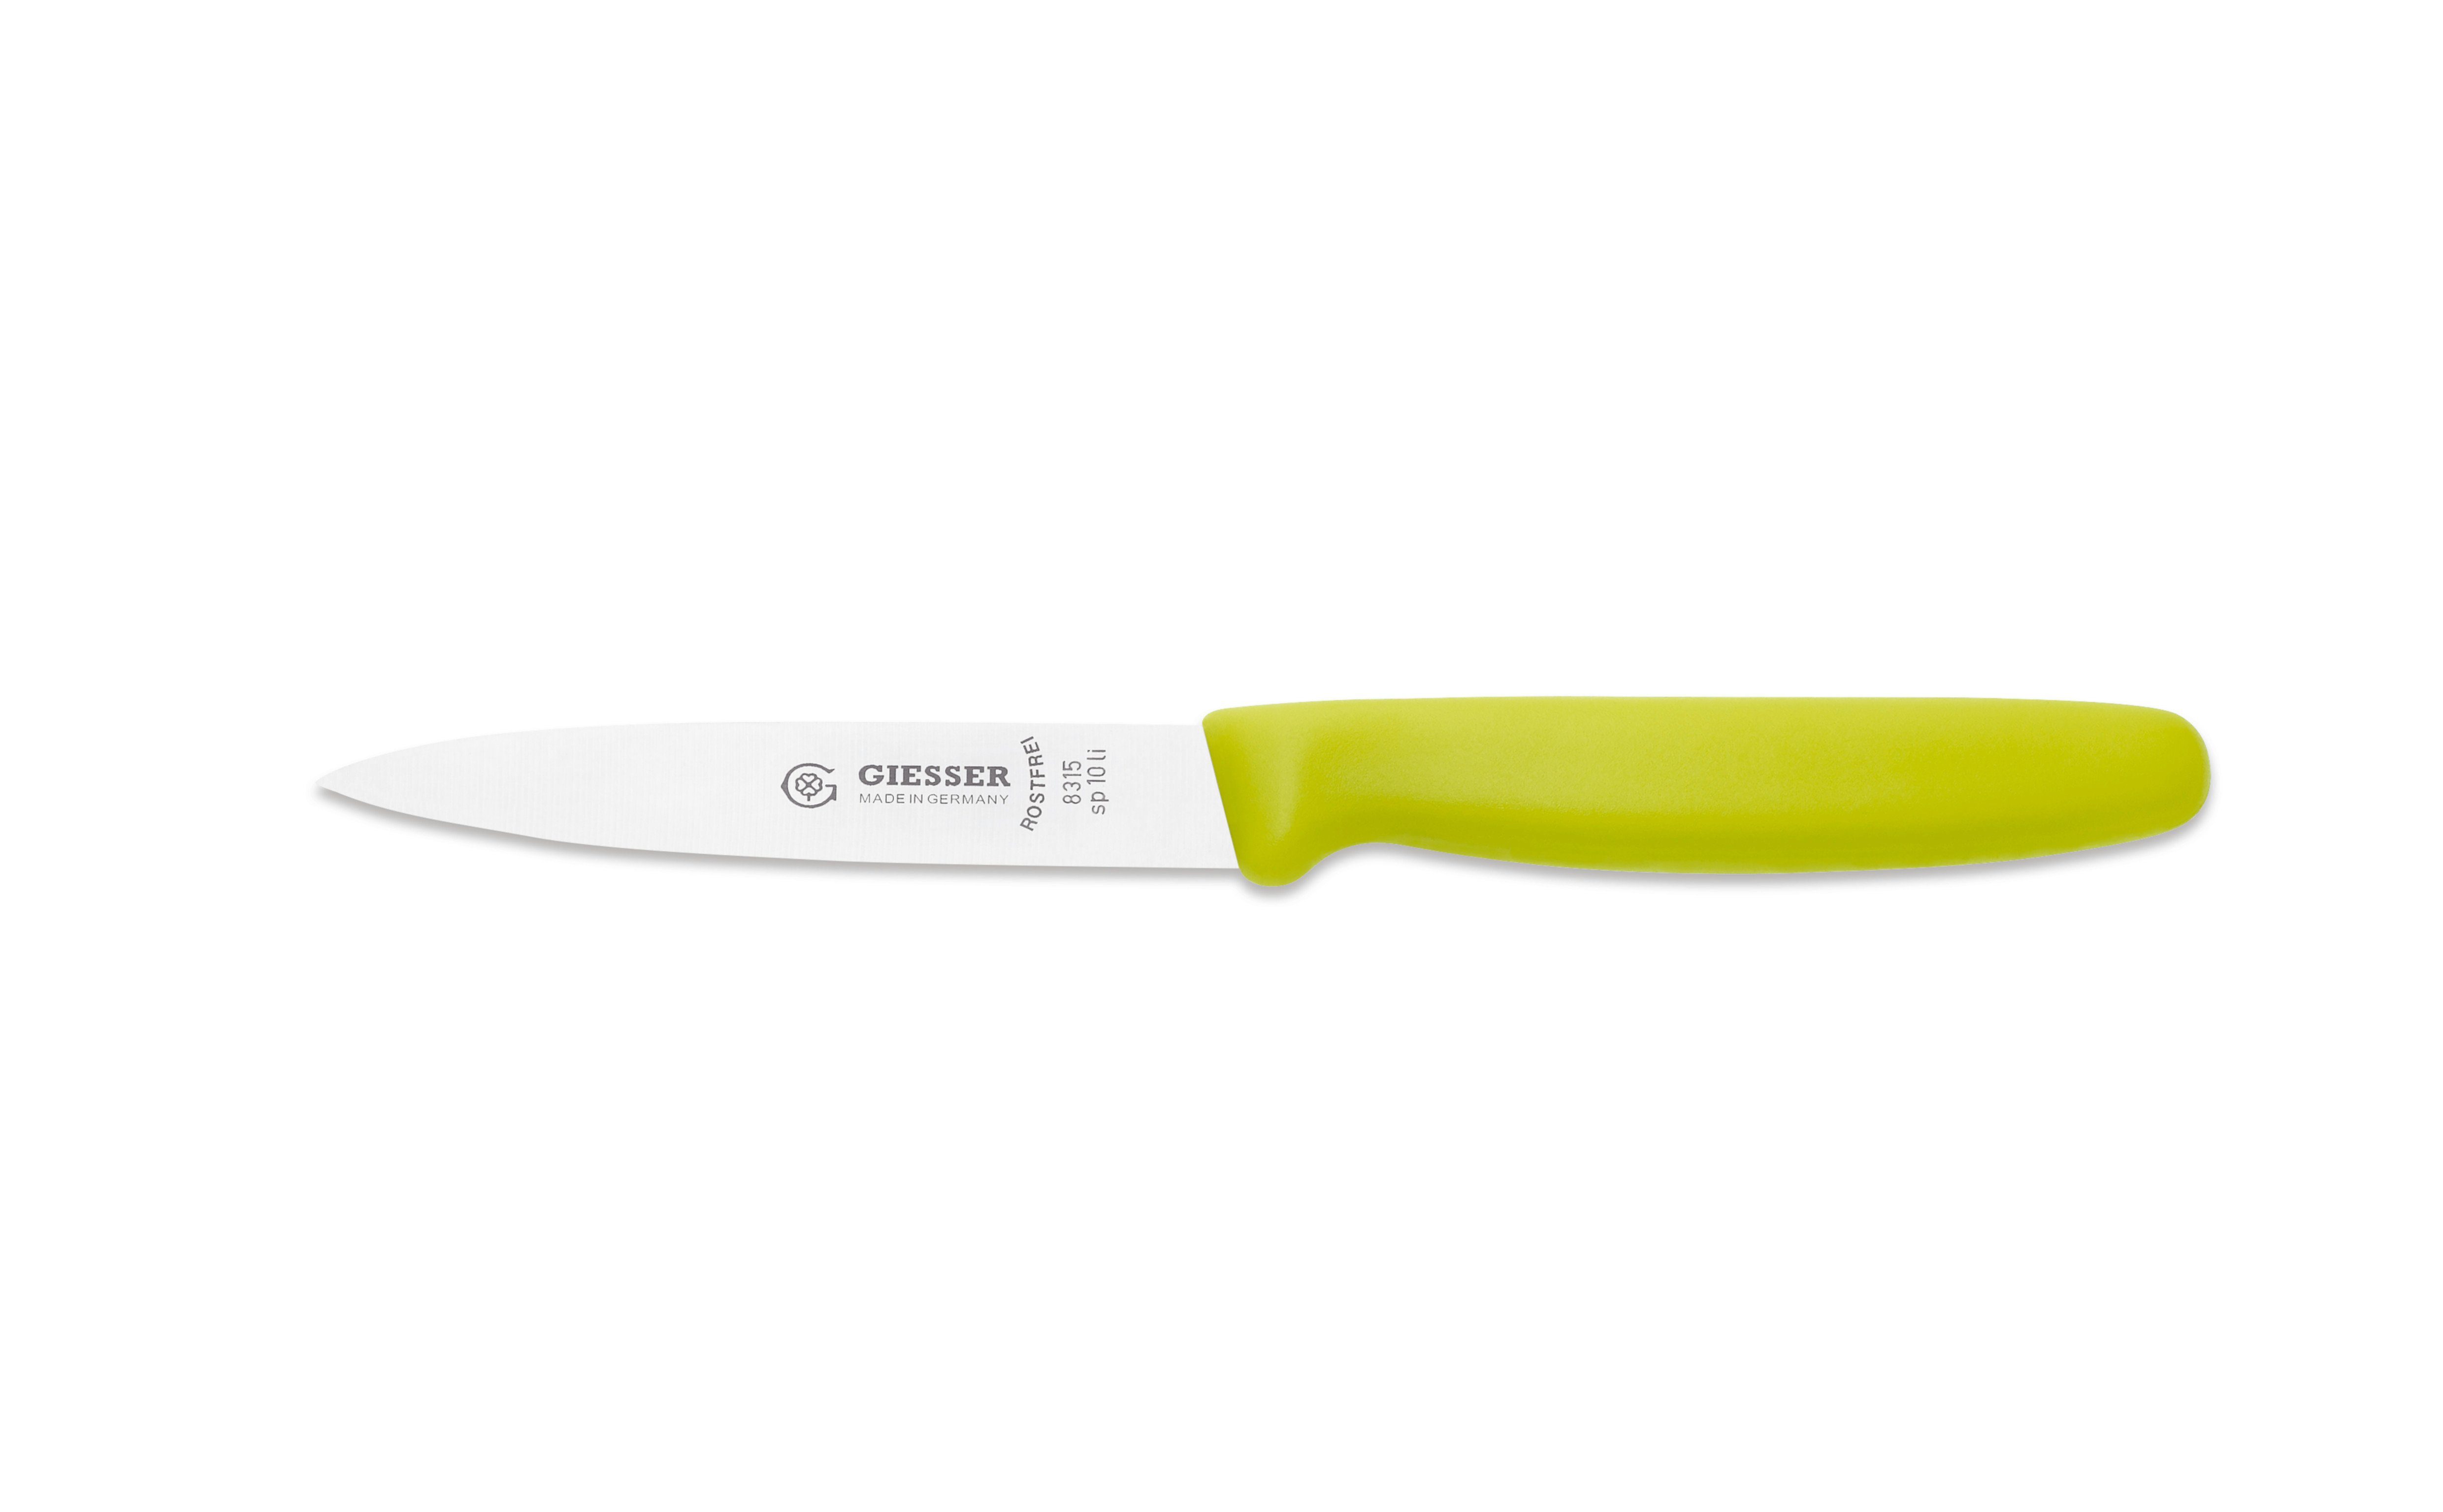 Spickmesser 3mm Wellenschliff mit ohne sp 8/10/12, Messer 8315 oder Limette Giesser Küchenmesser Gemüsemesser